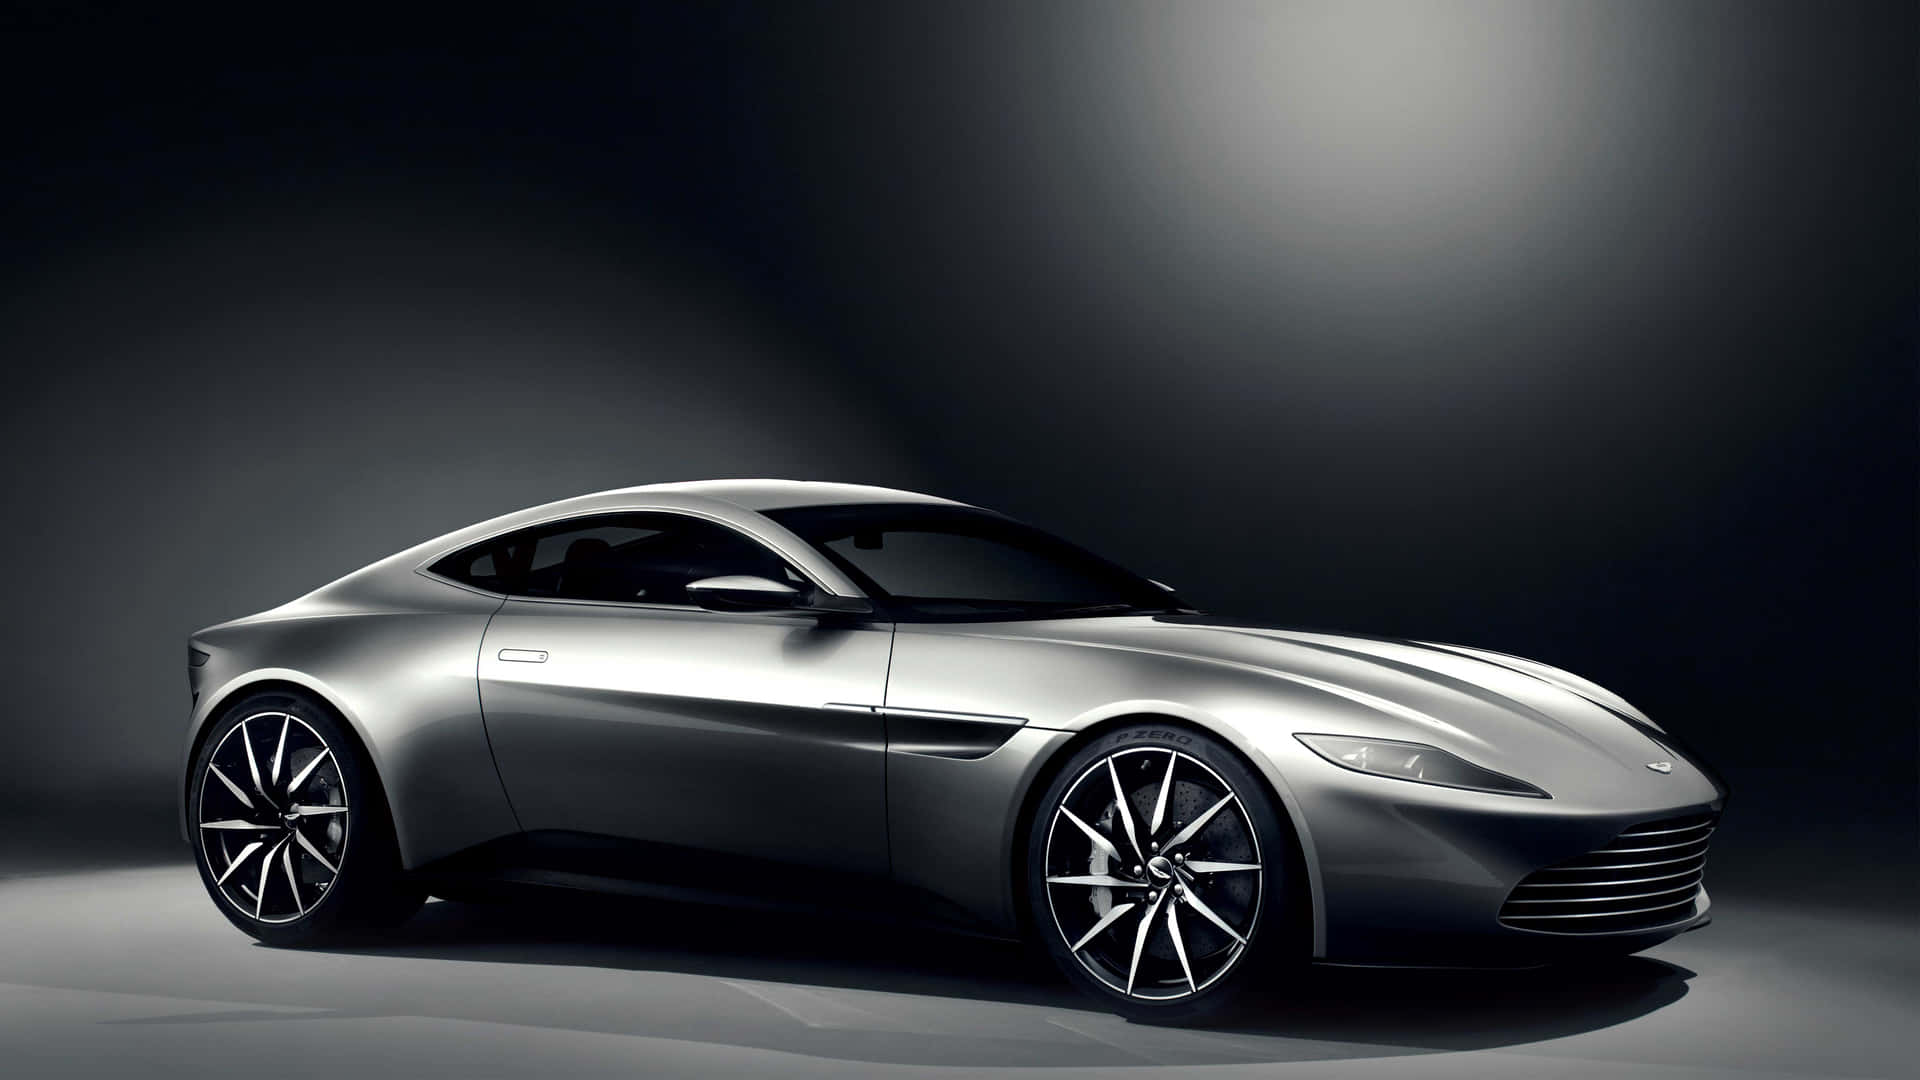 Stilder Taler Højt: Den Ikoniske Aston Martin